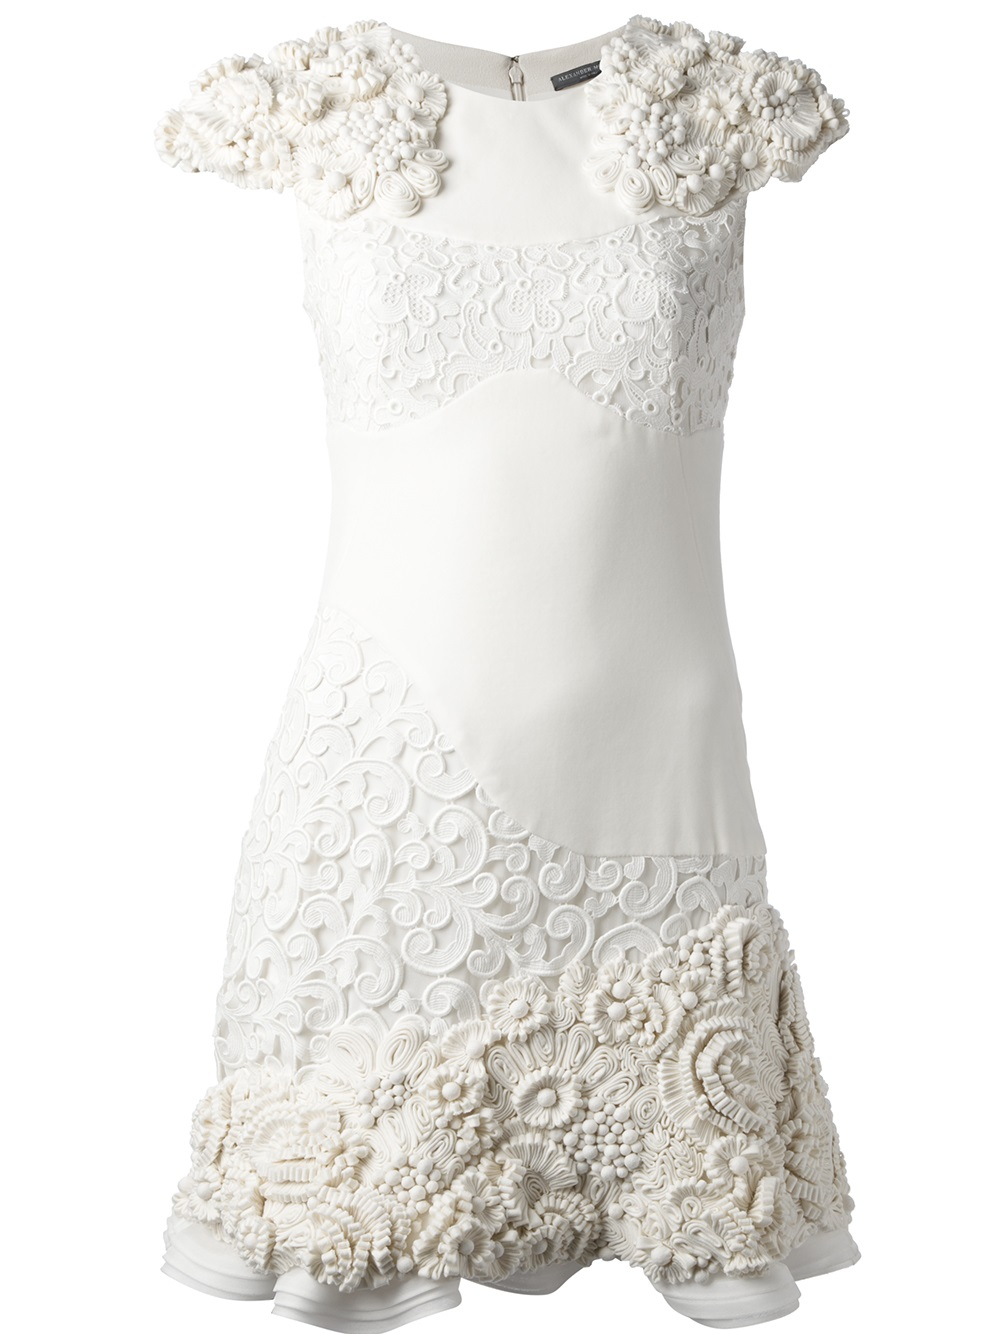 White embellished dress